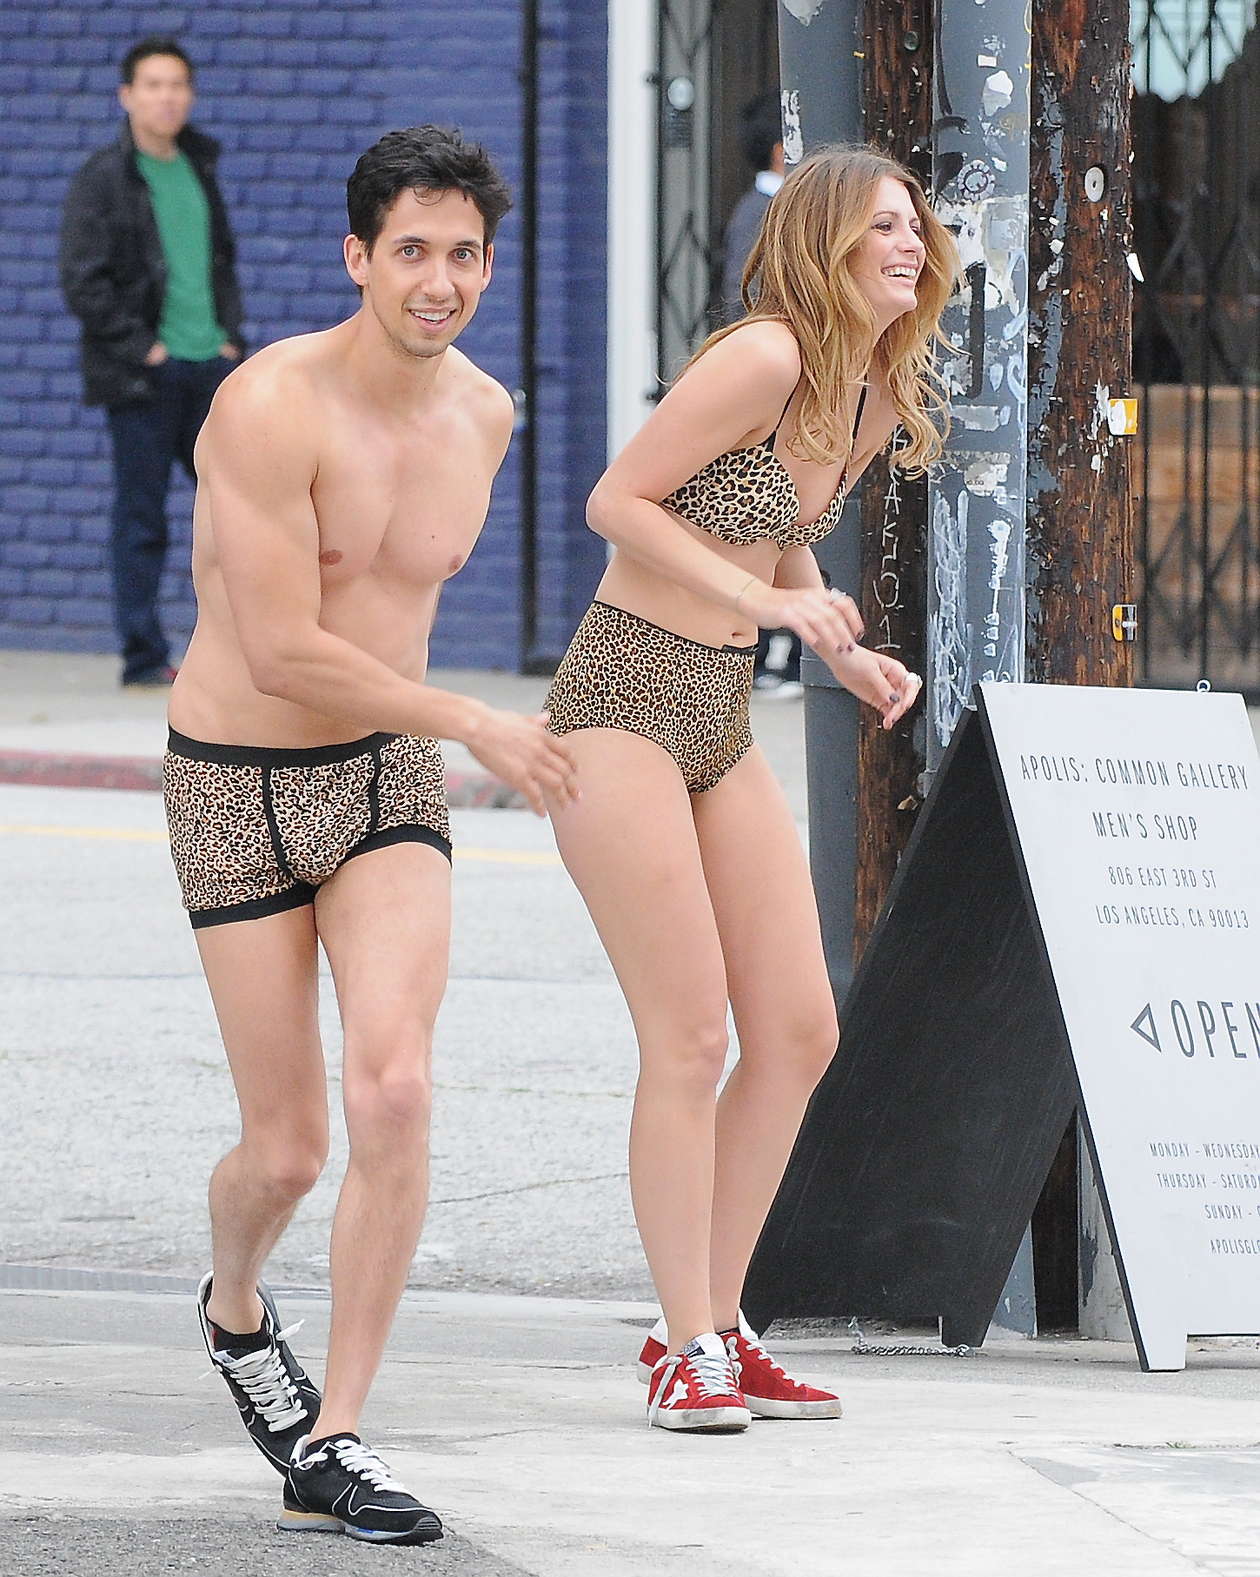 Mischa Barton wear leopard print style underwear for Noel Gallagher Video shoot in Los Angeles